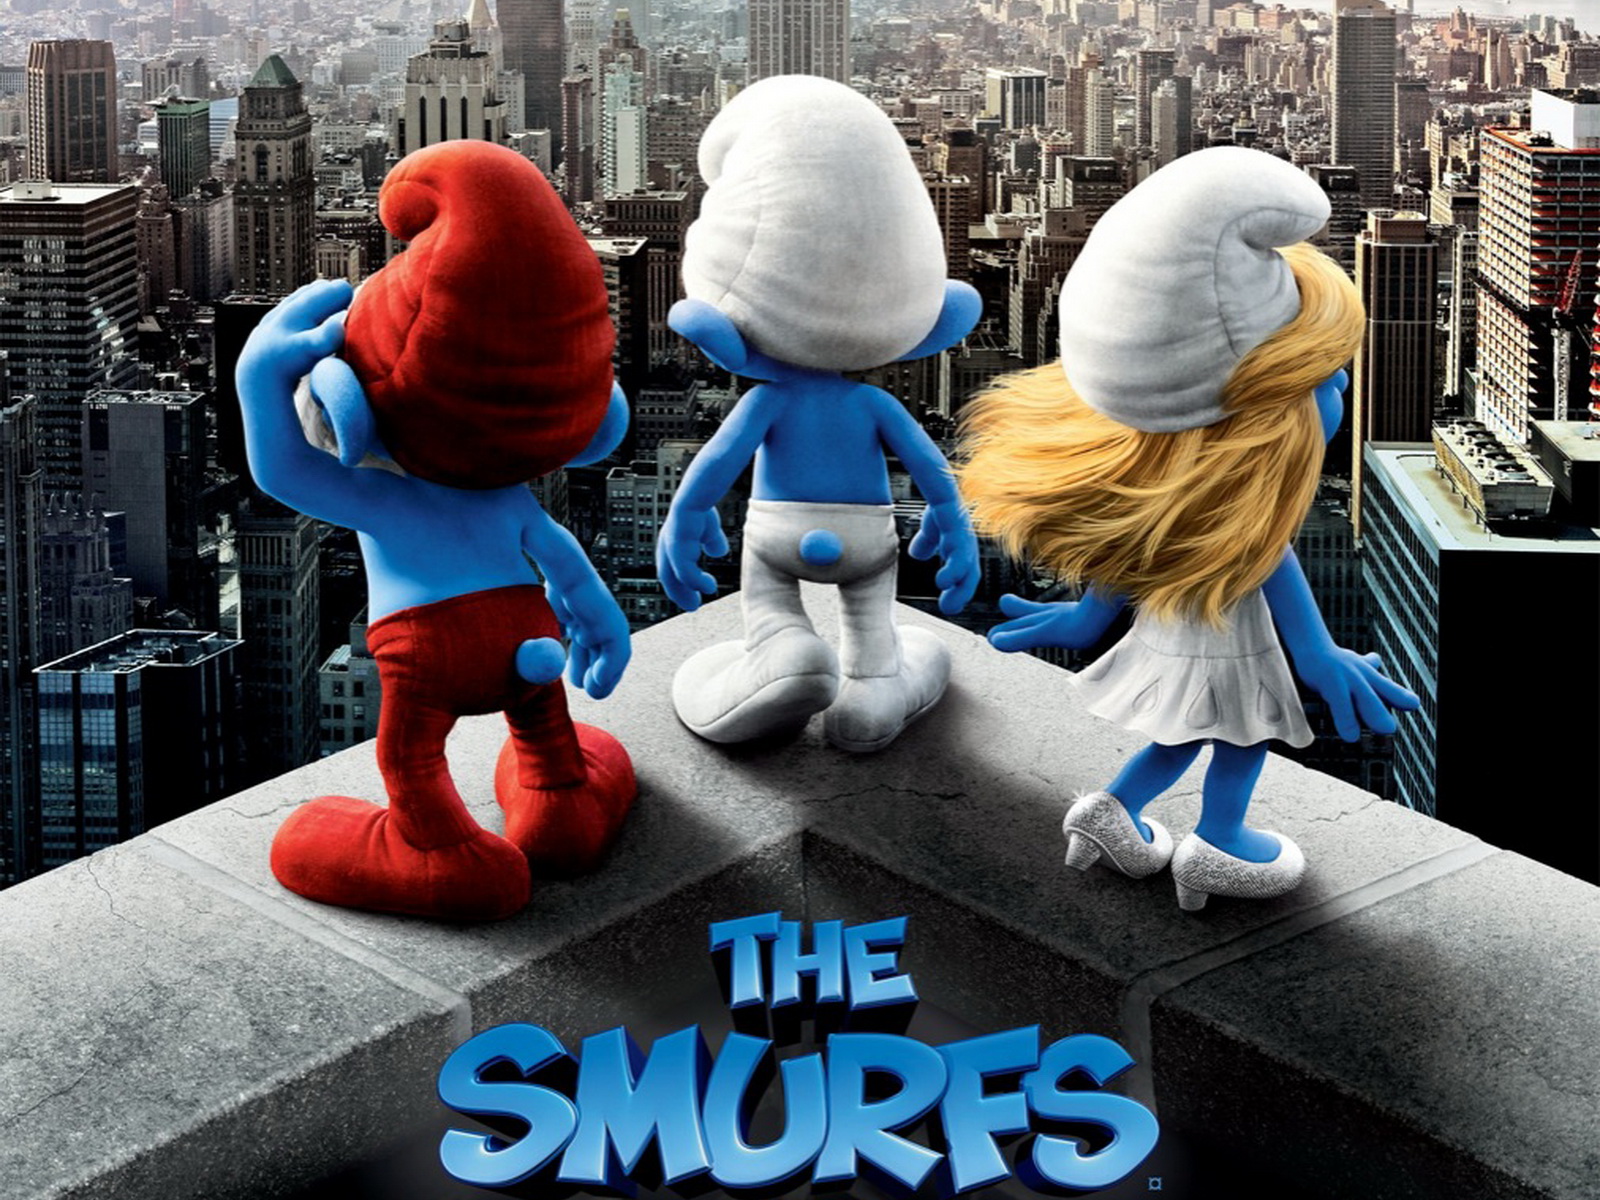 The Smurfs